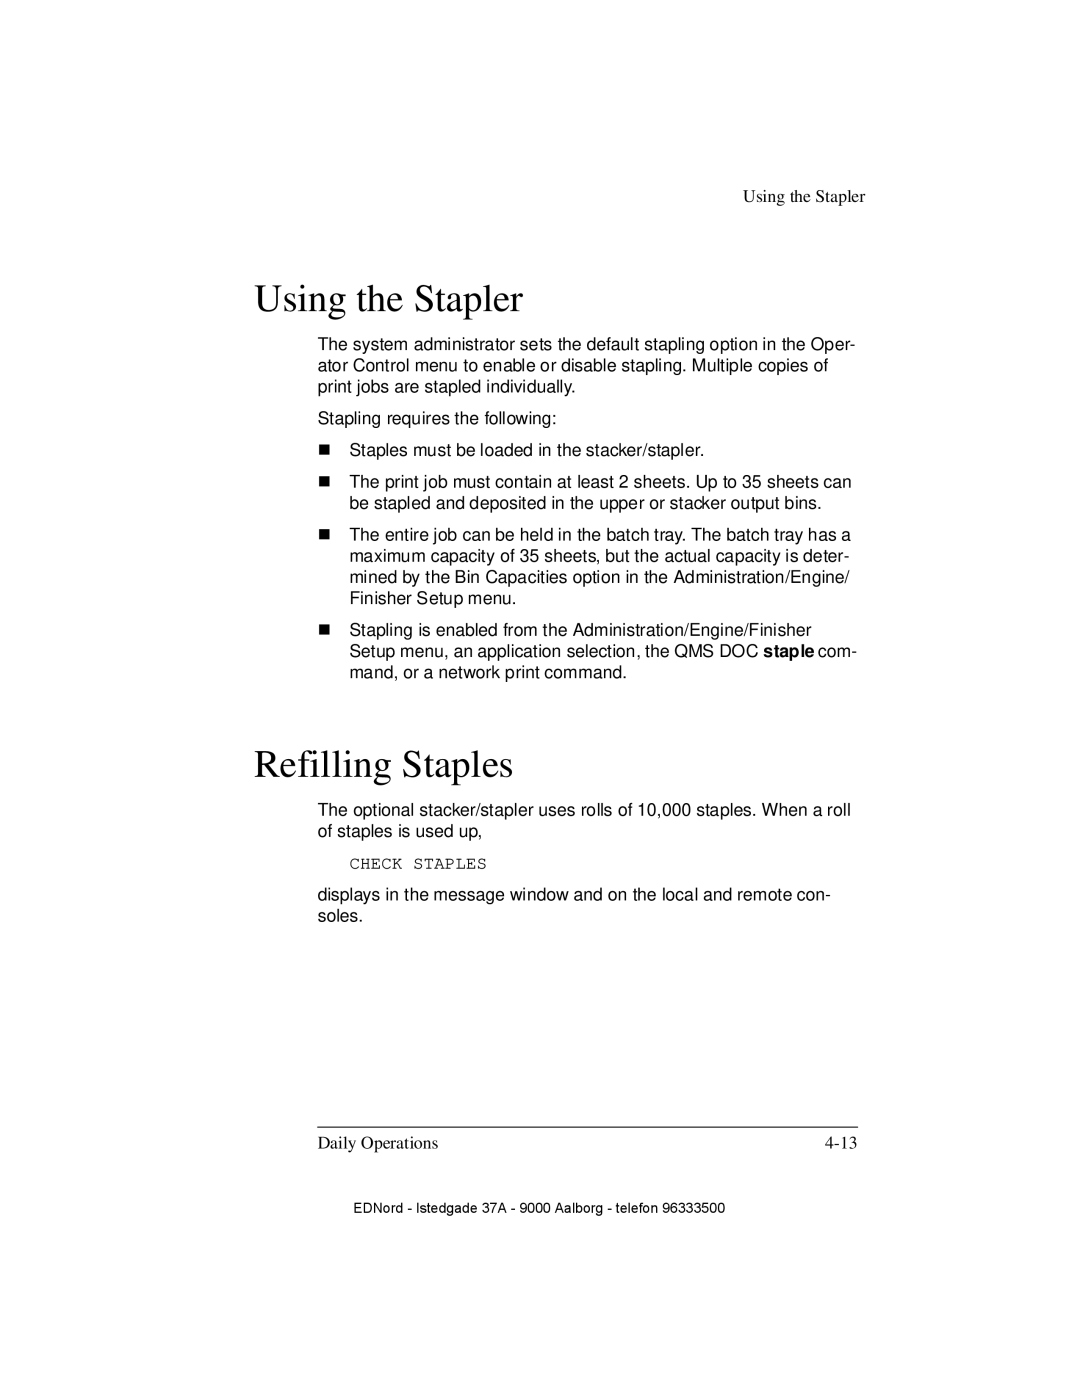 IBM QMS 4525 manual Using the Stapler, Refilling Staples 